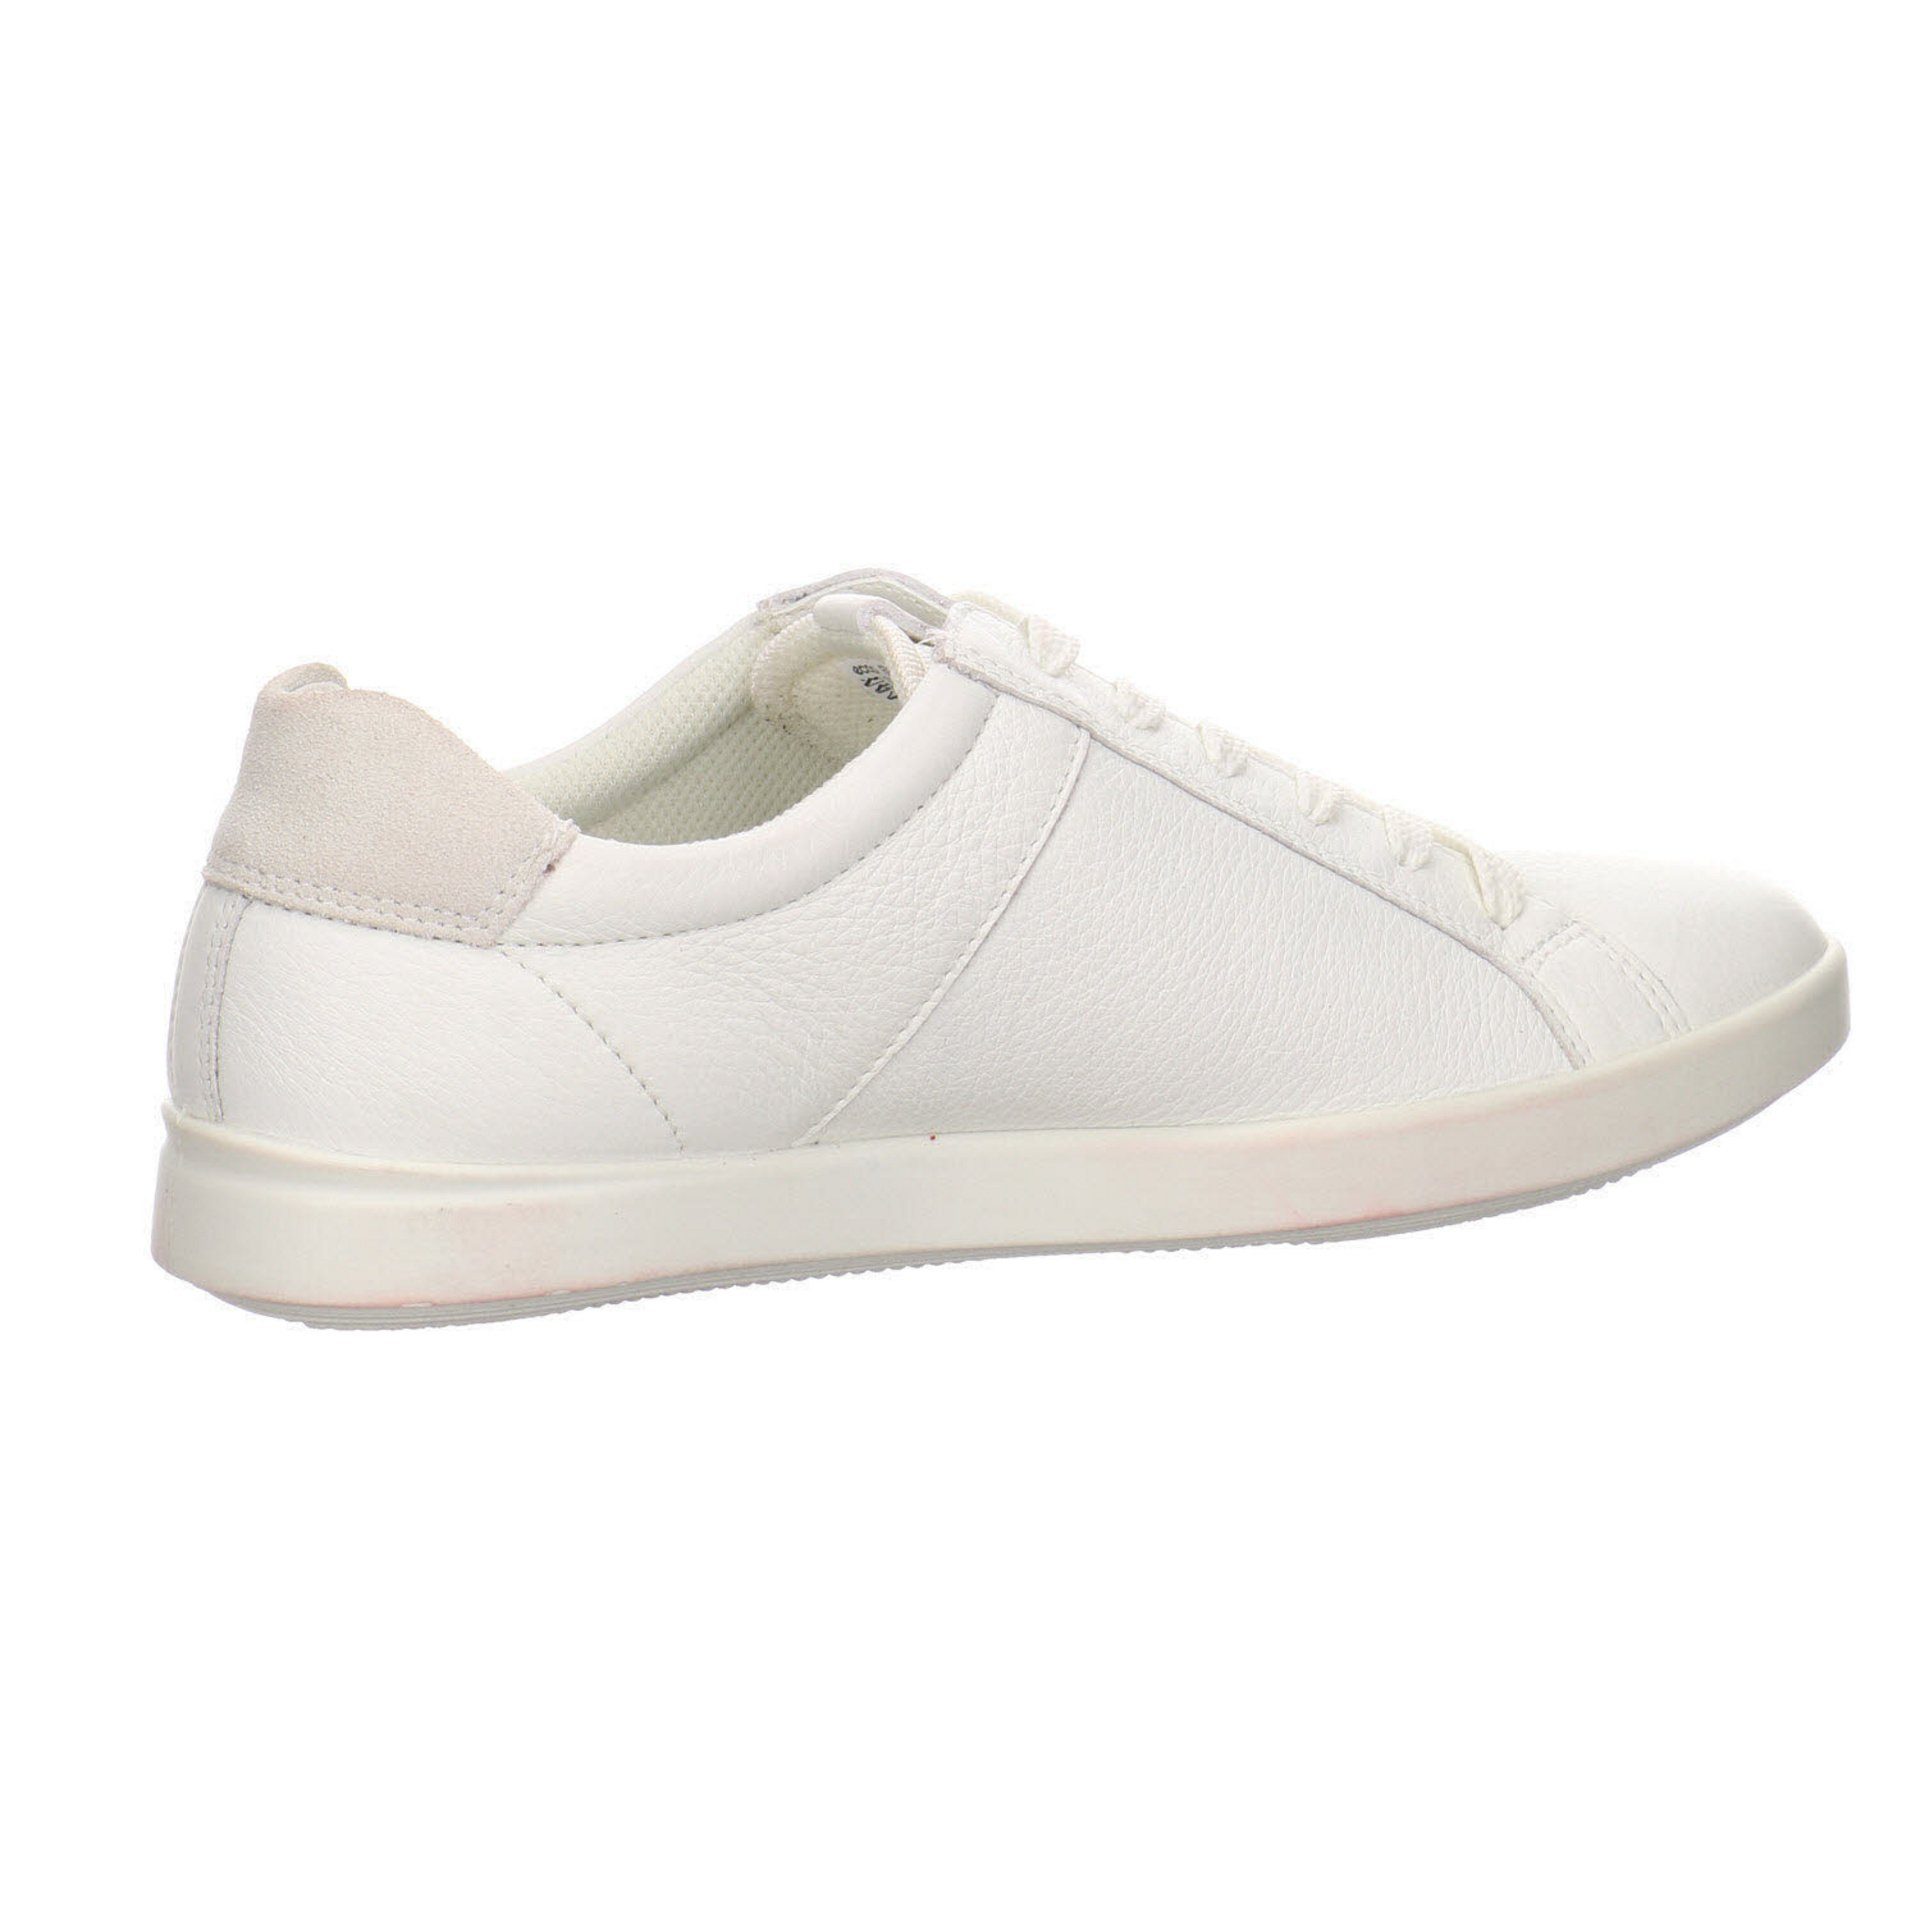 Glattleder Ecco Damen Soft Schnürschuh Sneaker white 1 white/shadow Schnürhalbschuhe